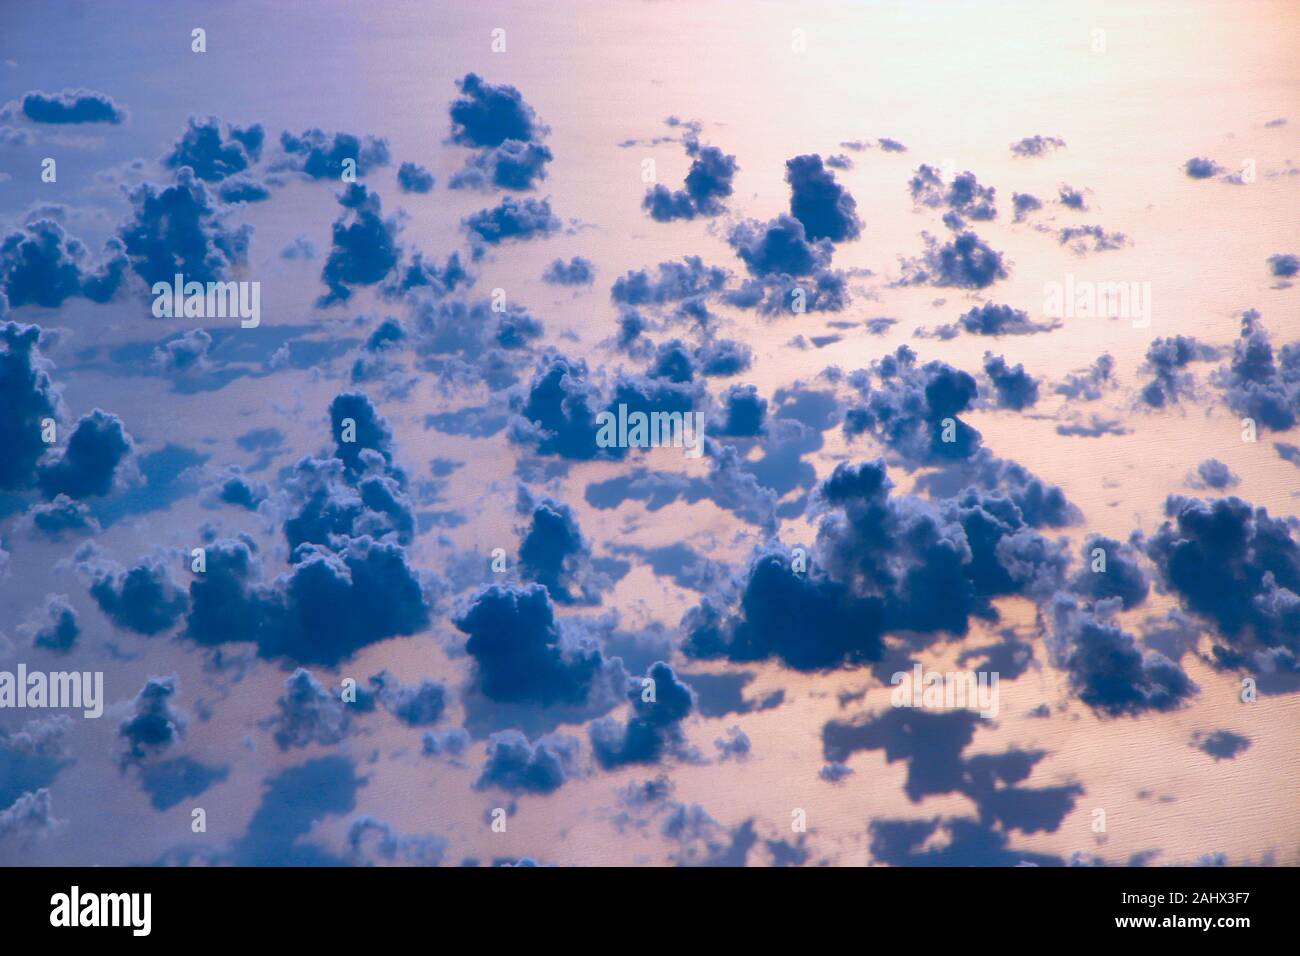 Bella vista da finestra di aereo sopra le nuvole e la superficie del mare. Panorama naturale con le nuvole. Nuvole bianche si muove al di sopra della superficie dell'acqua di mare. Foto Stock